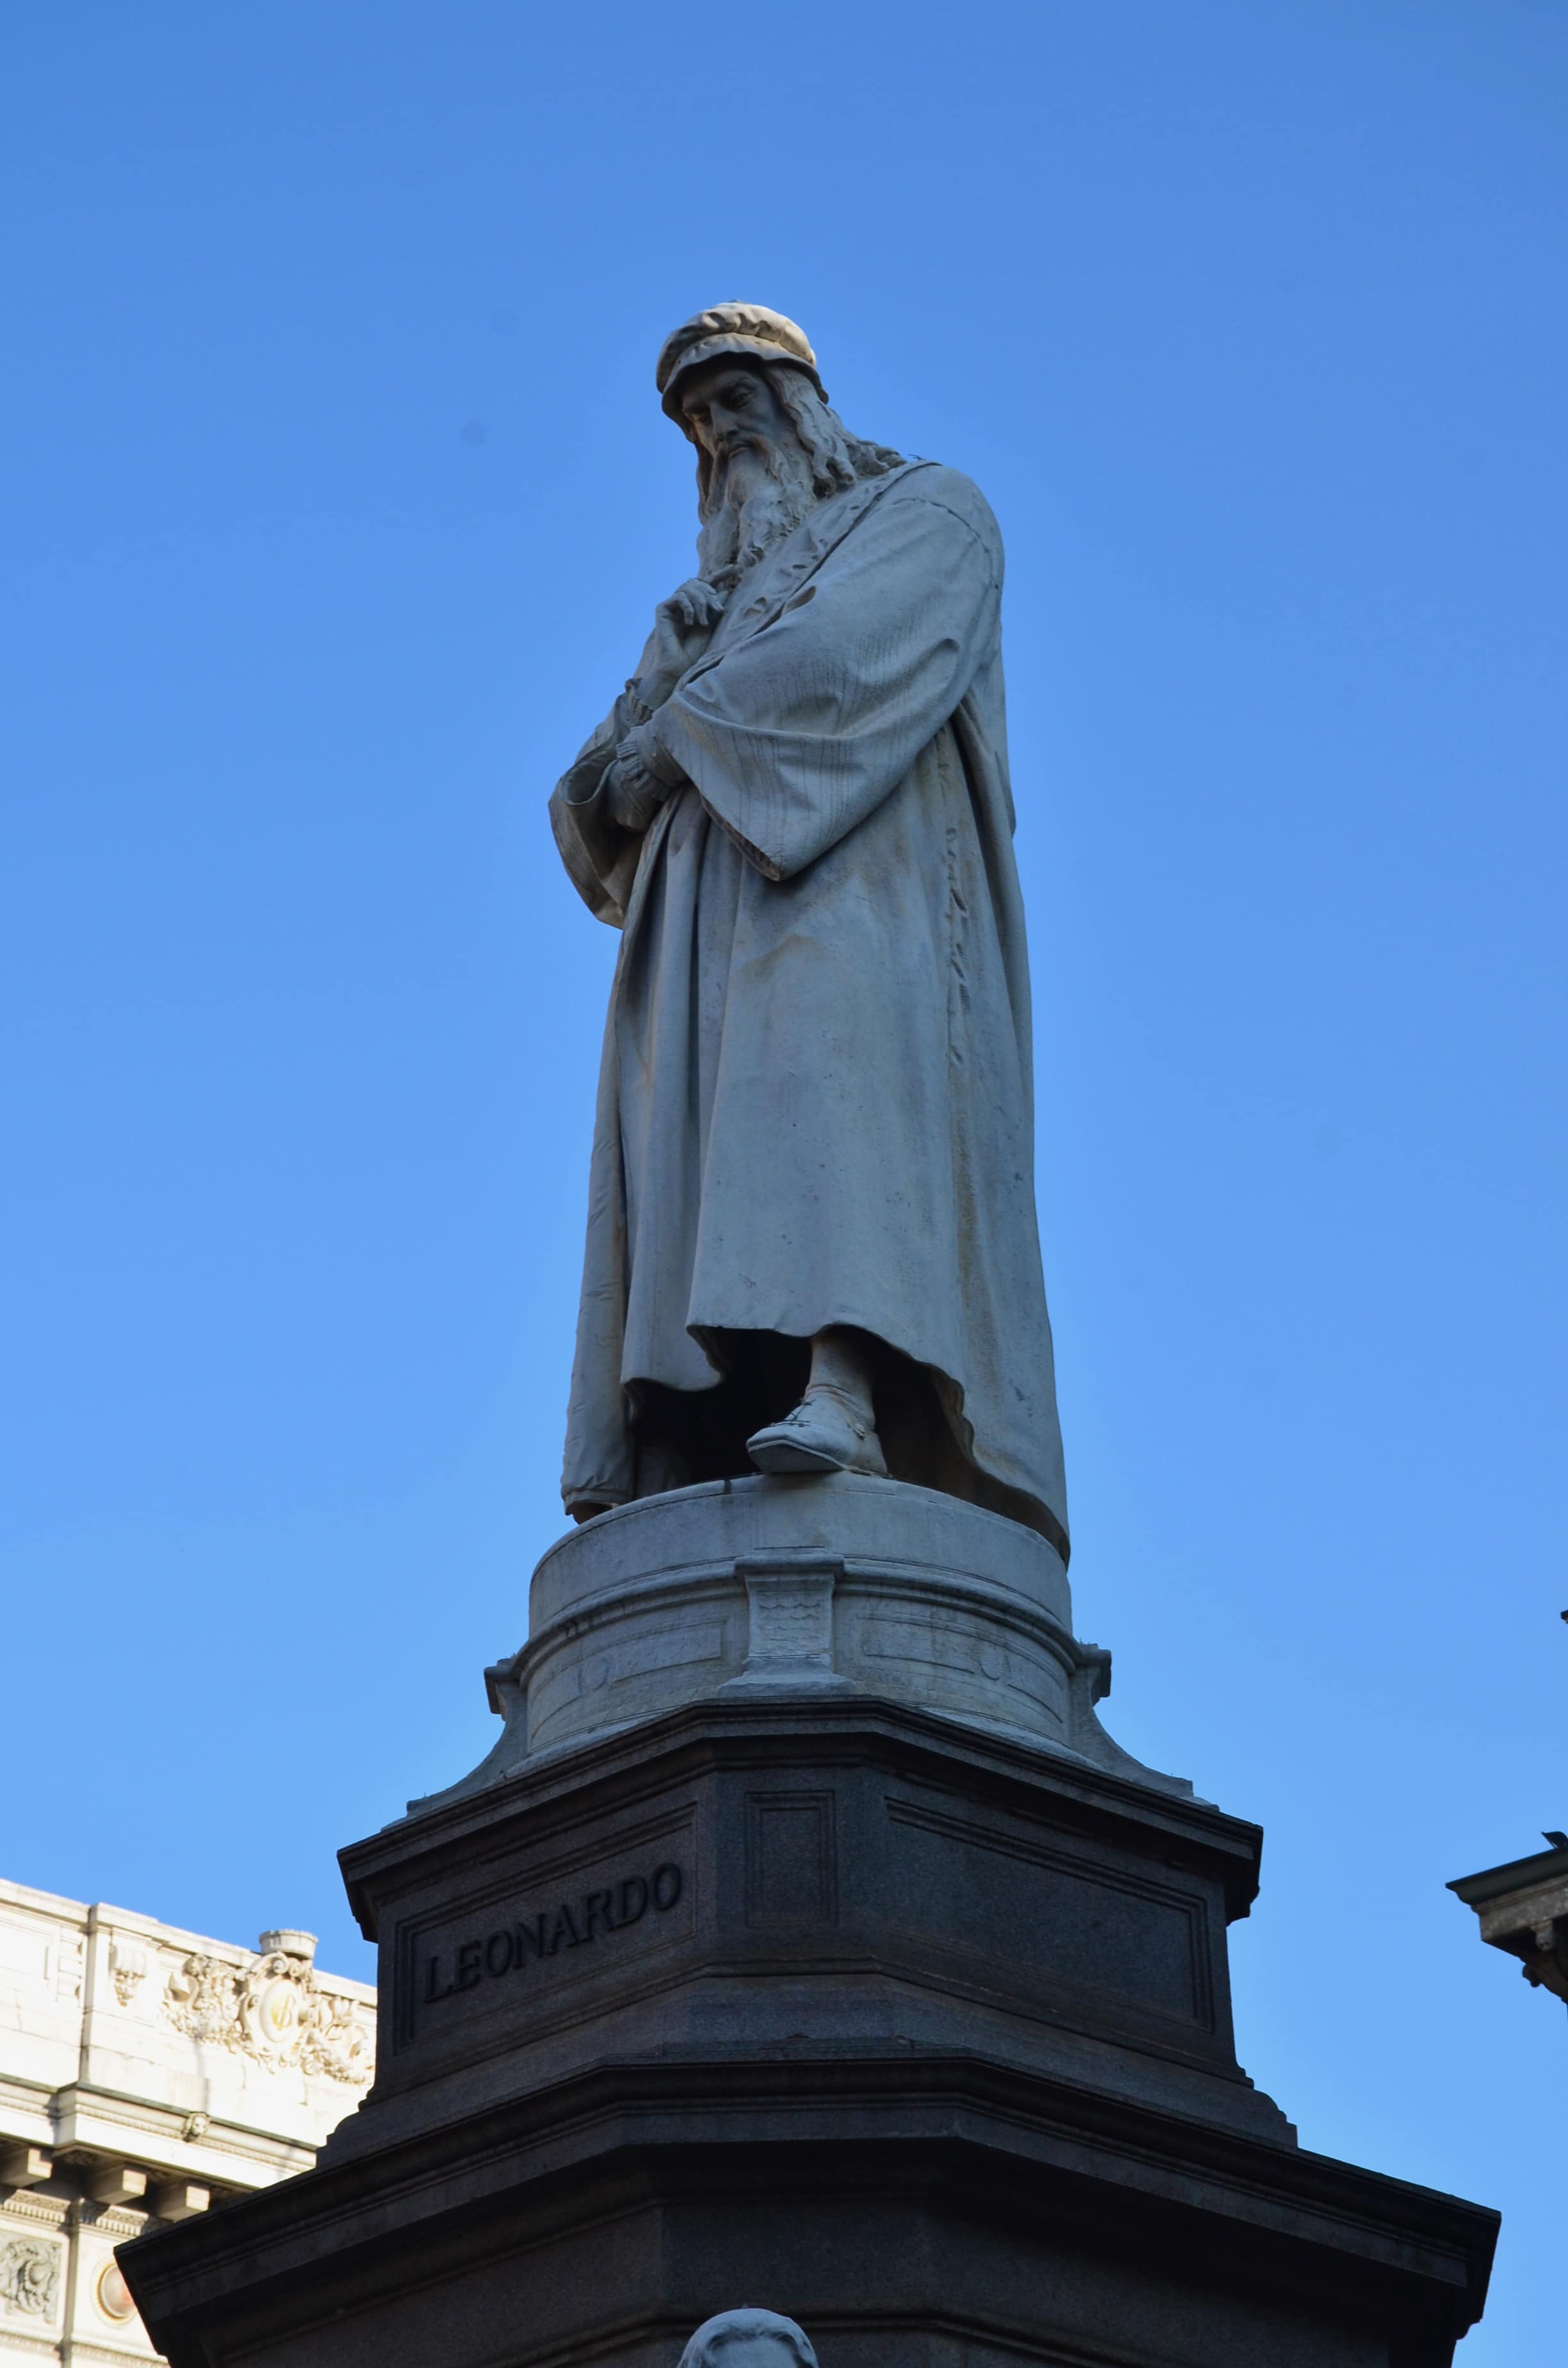 Leonardo da Vinci monument on Piazza della Scala in Milan, Italy